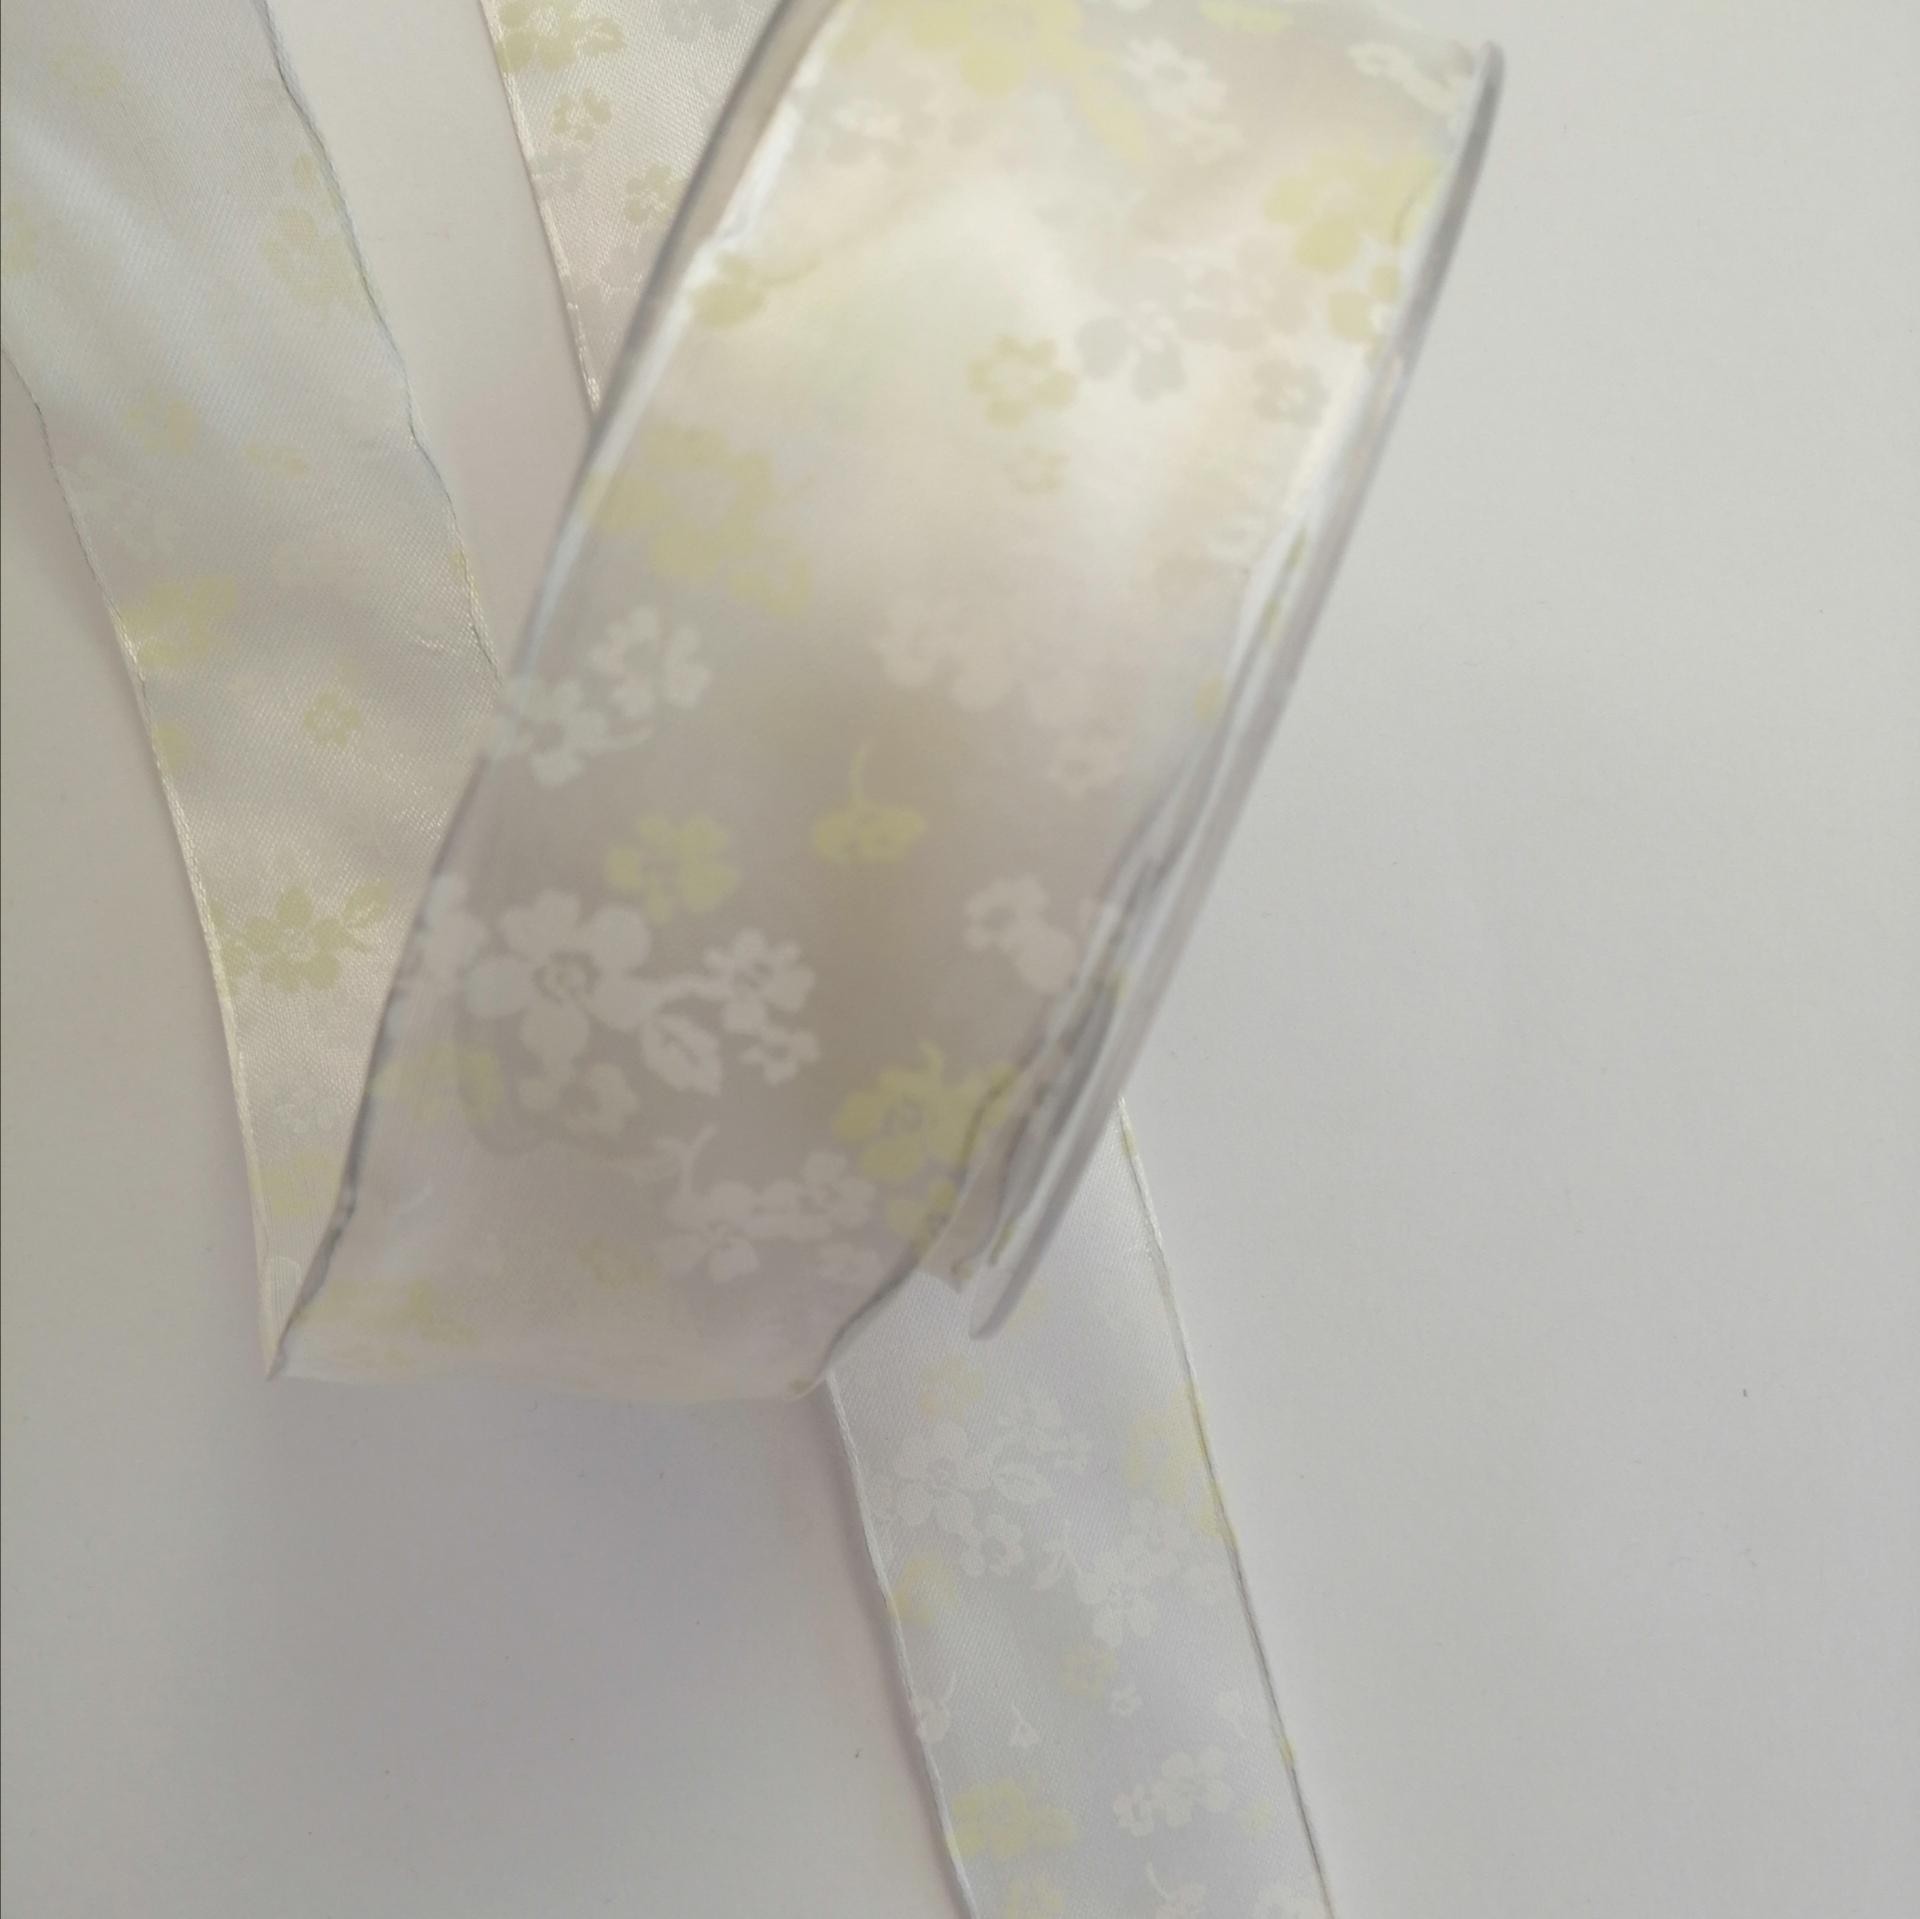 nastro raso bianco con fiorellini bianchi e gialli marianne hobby 40 mm x  1mt - Bagheria (Palermo)